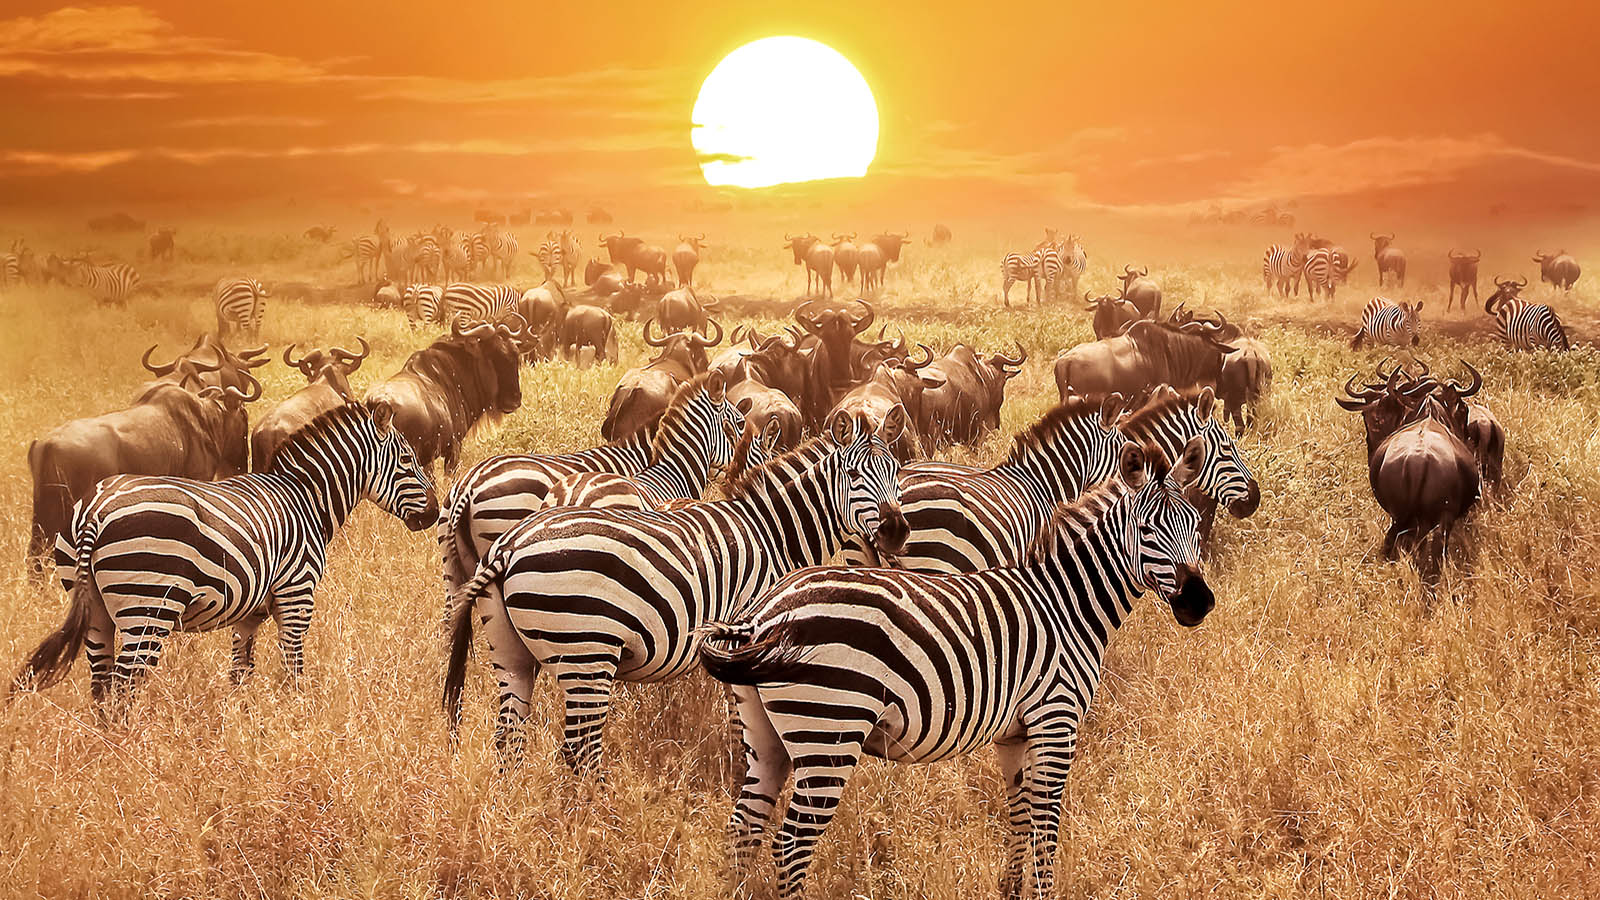 東非-坦尚尼亞 塞倫蓋堤國家公園 Serengeti